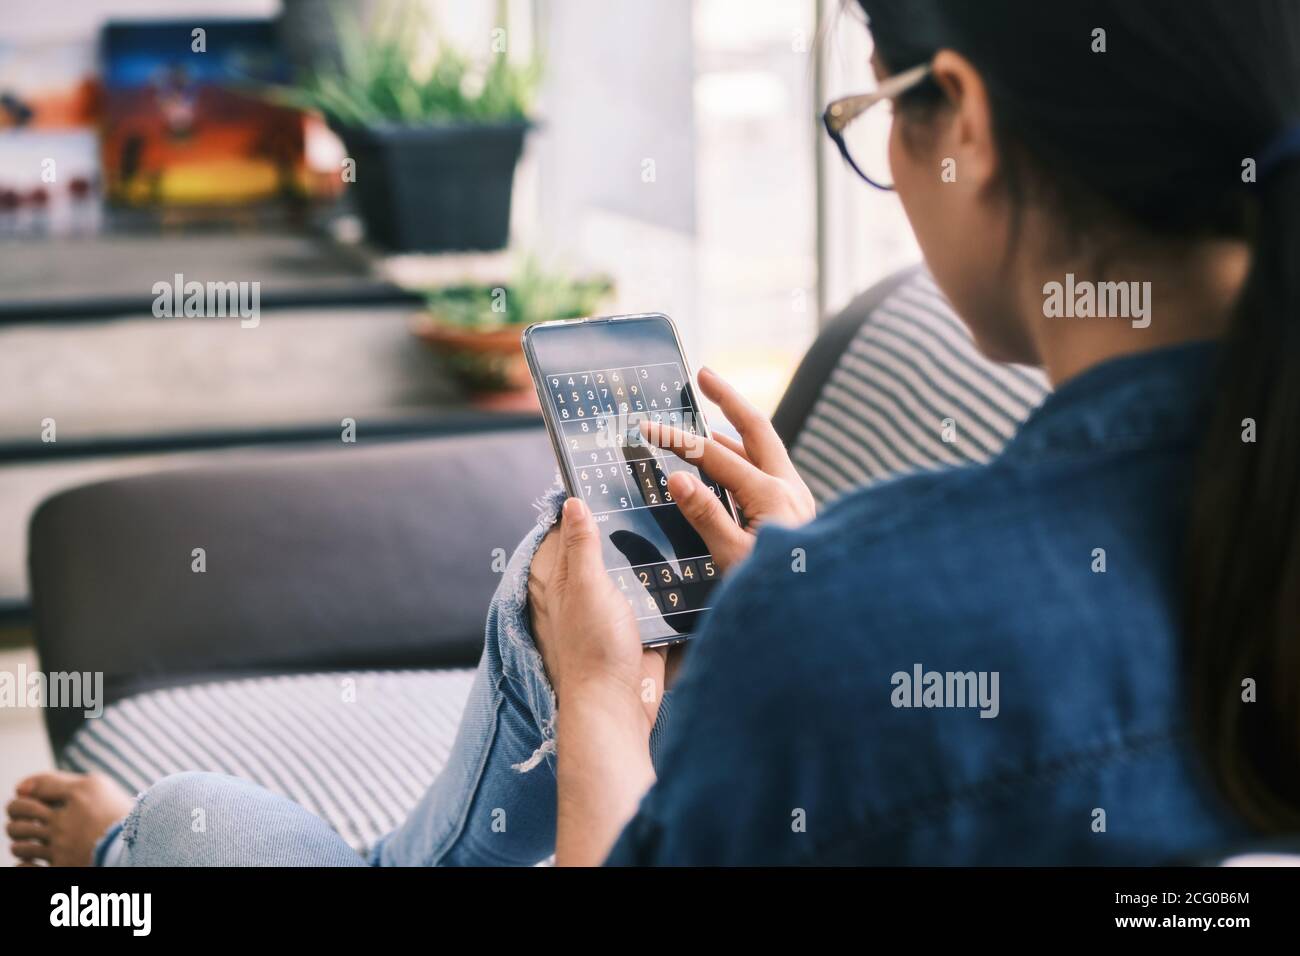 Mujer joven jugando al juego Sudoku con la aplicación en el teléfono Foto de stock